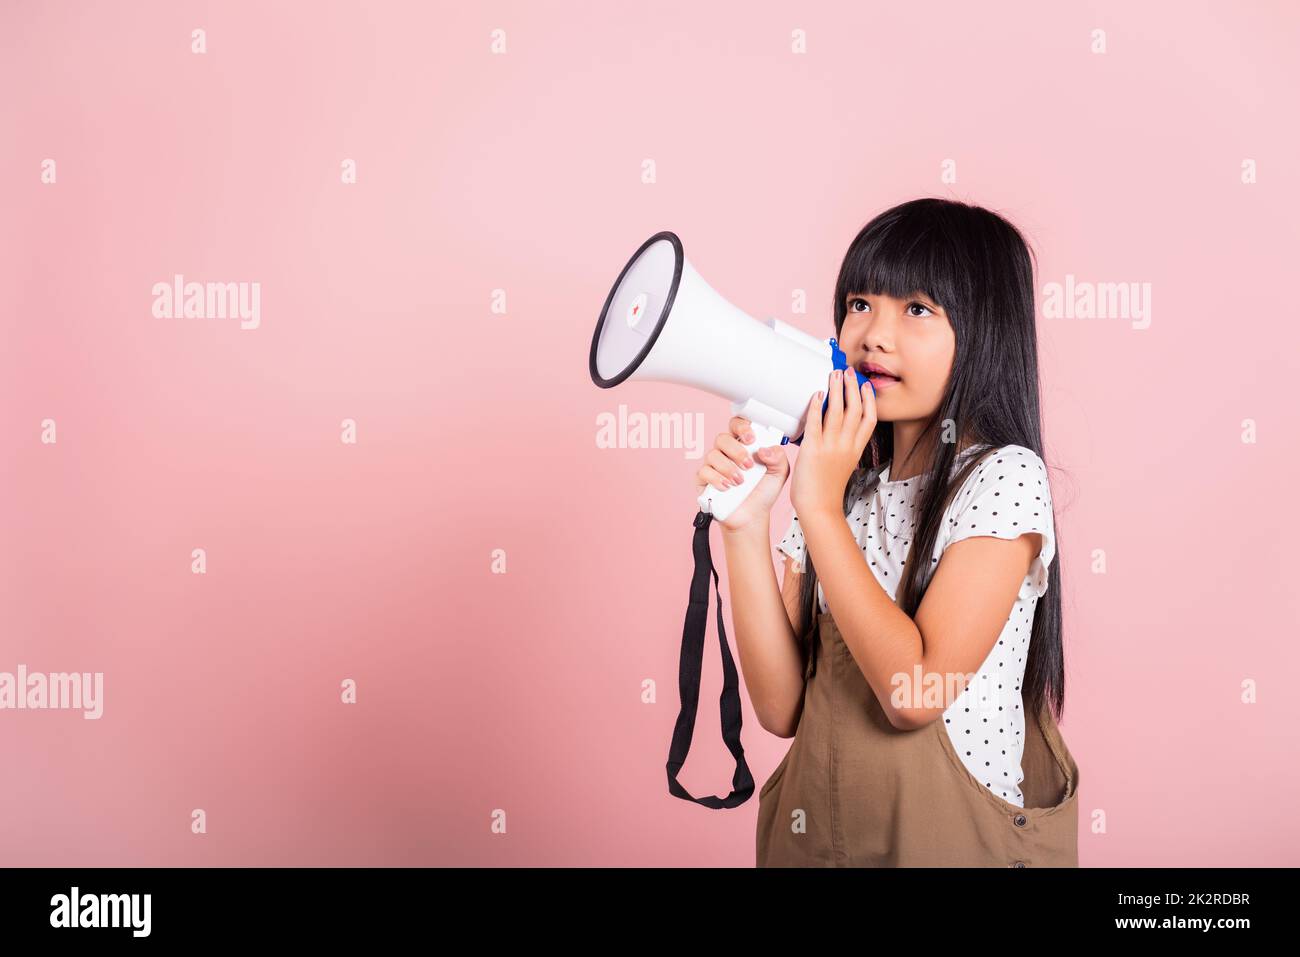 Petit enfant asiatique de 10 ans criant au mégaphone Banque D'Images